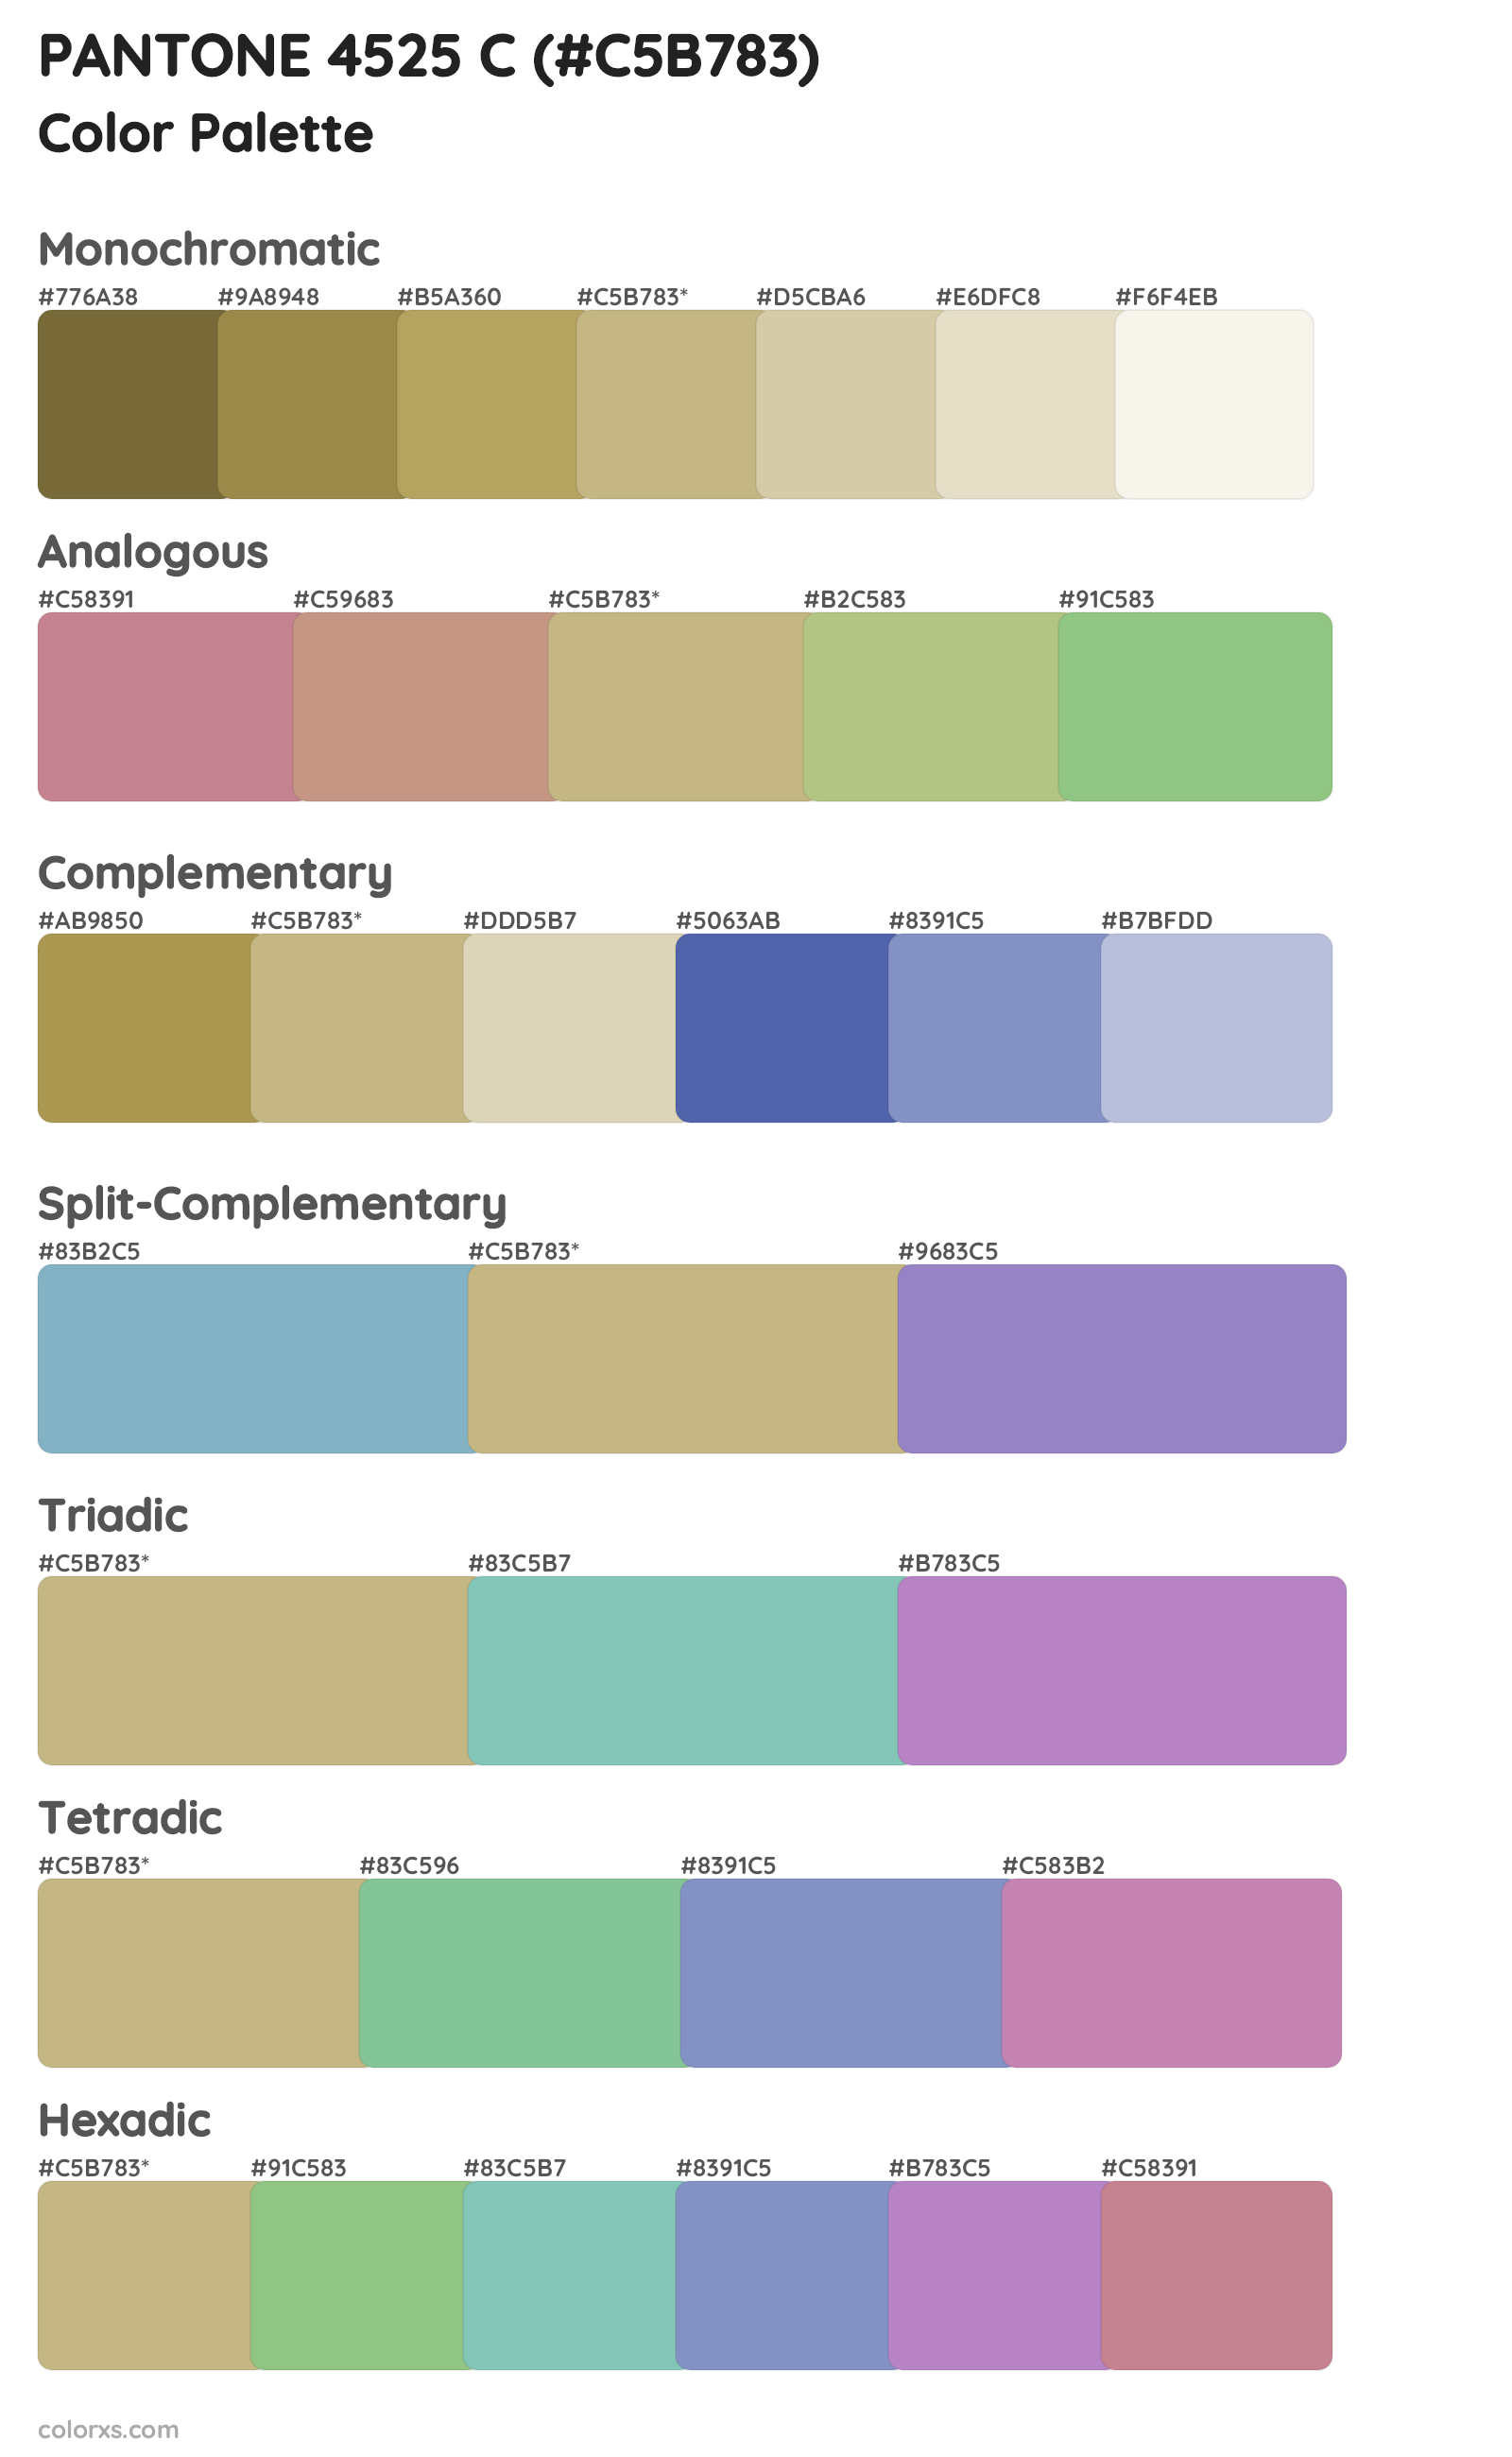 PANTONE 4525 C Color Scheme Palettes